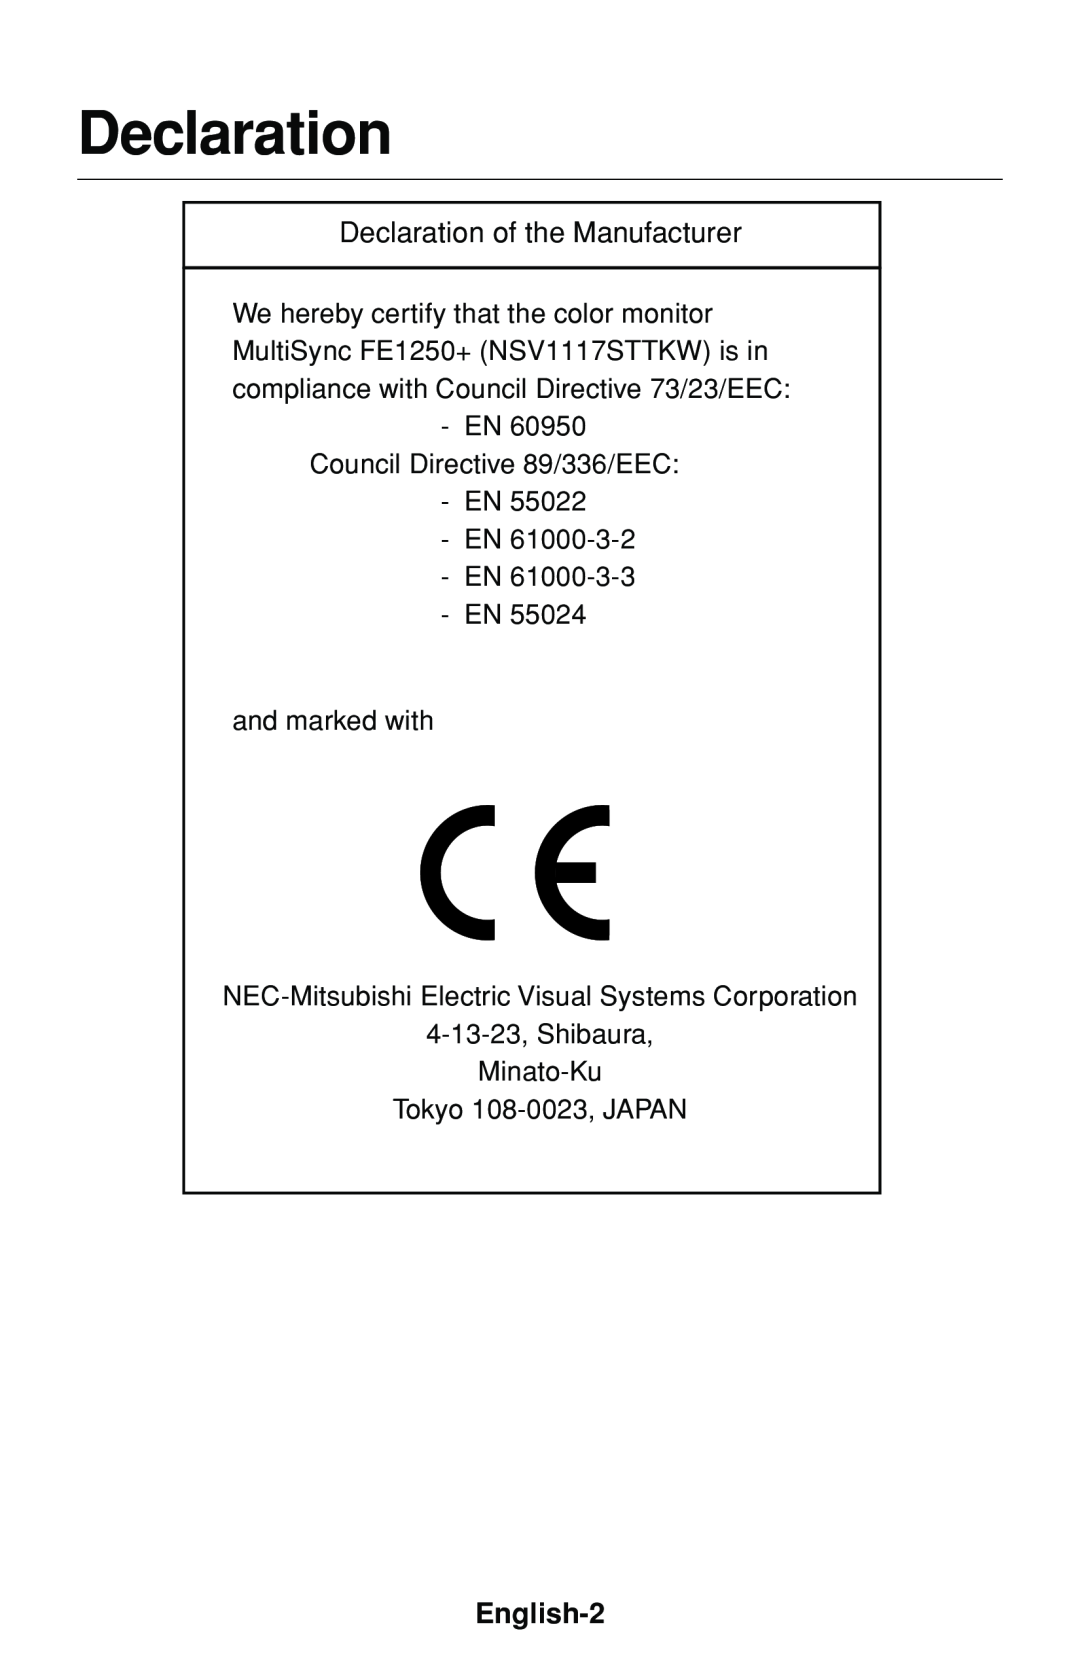 NEC FE1250+ user manual English-2, Declaration, EN Council Directive 89/336/EEC EN EN EN EN, and marked with 